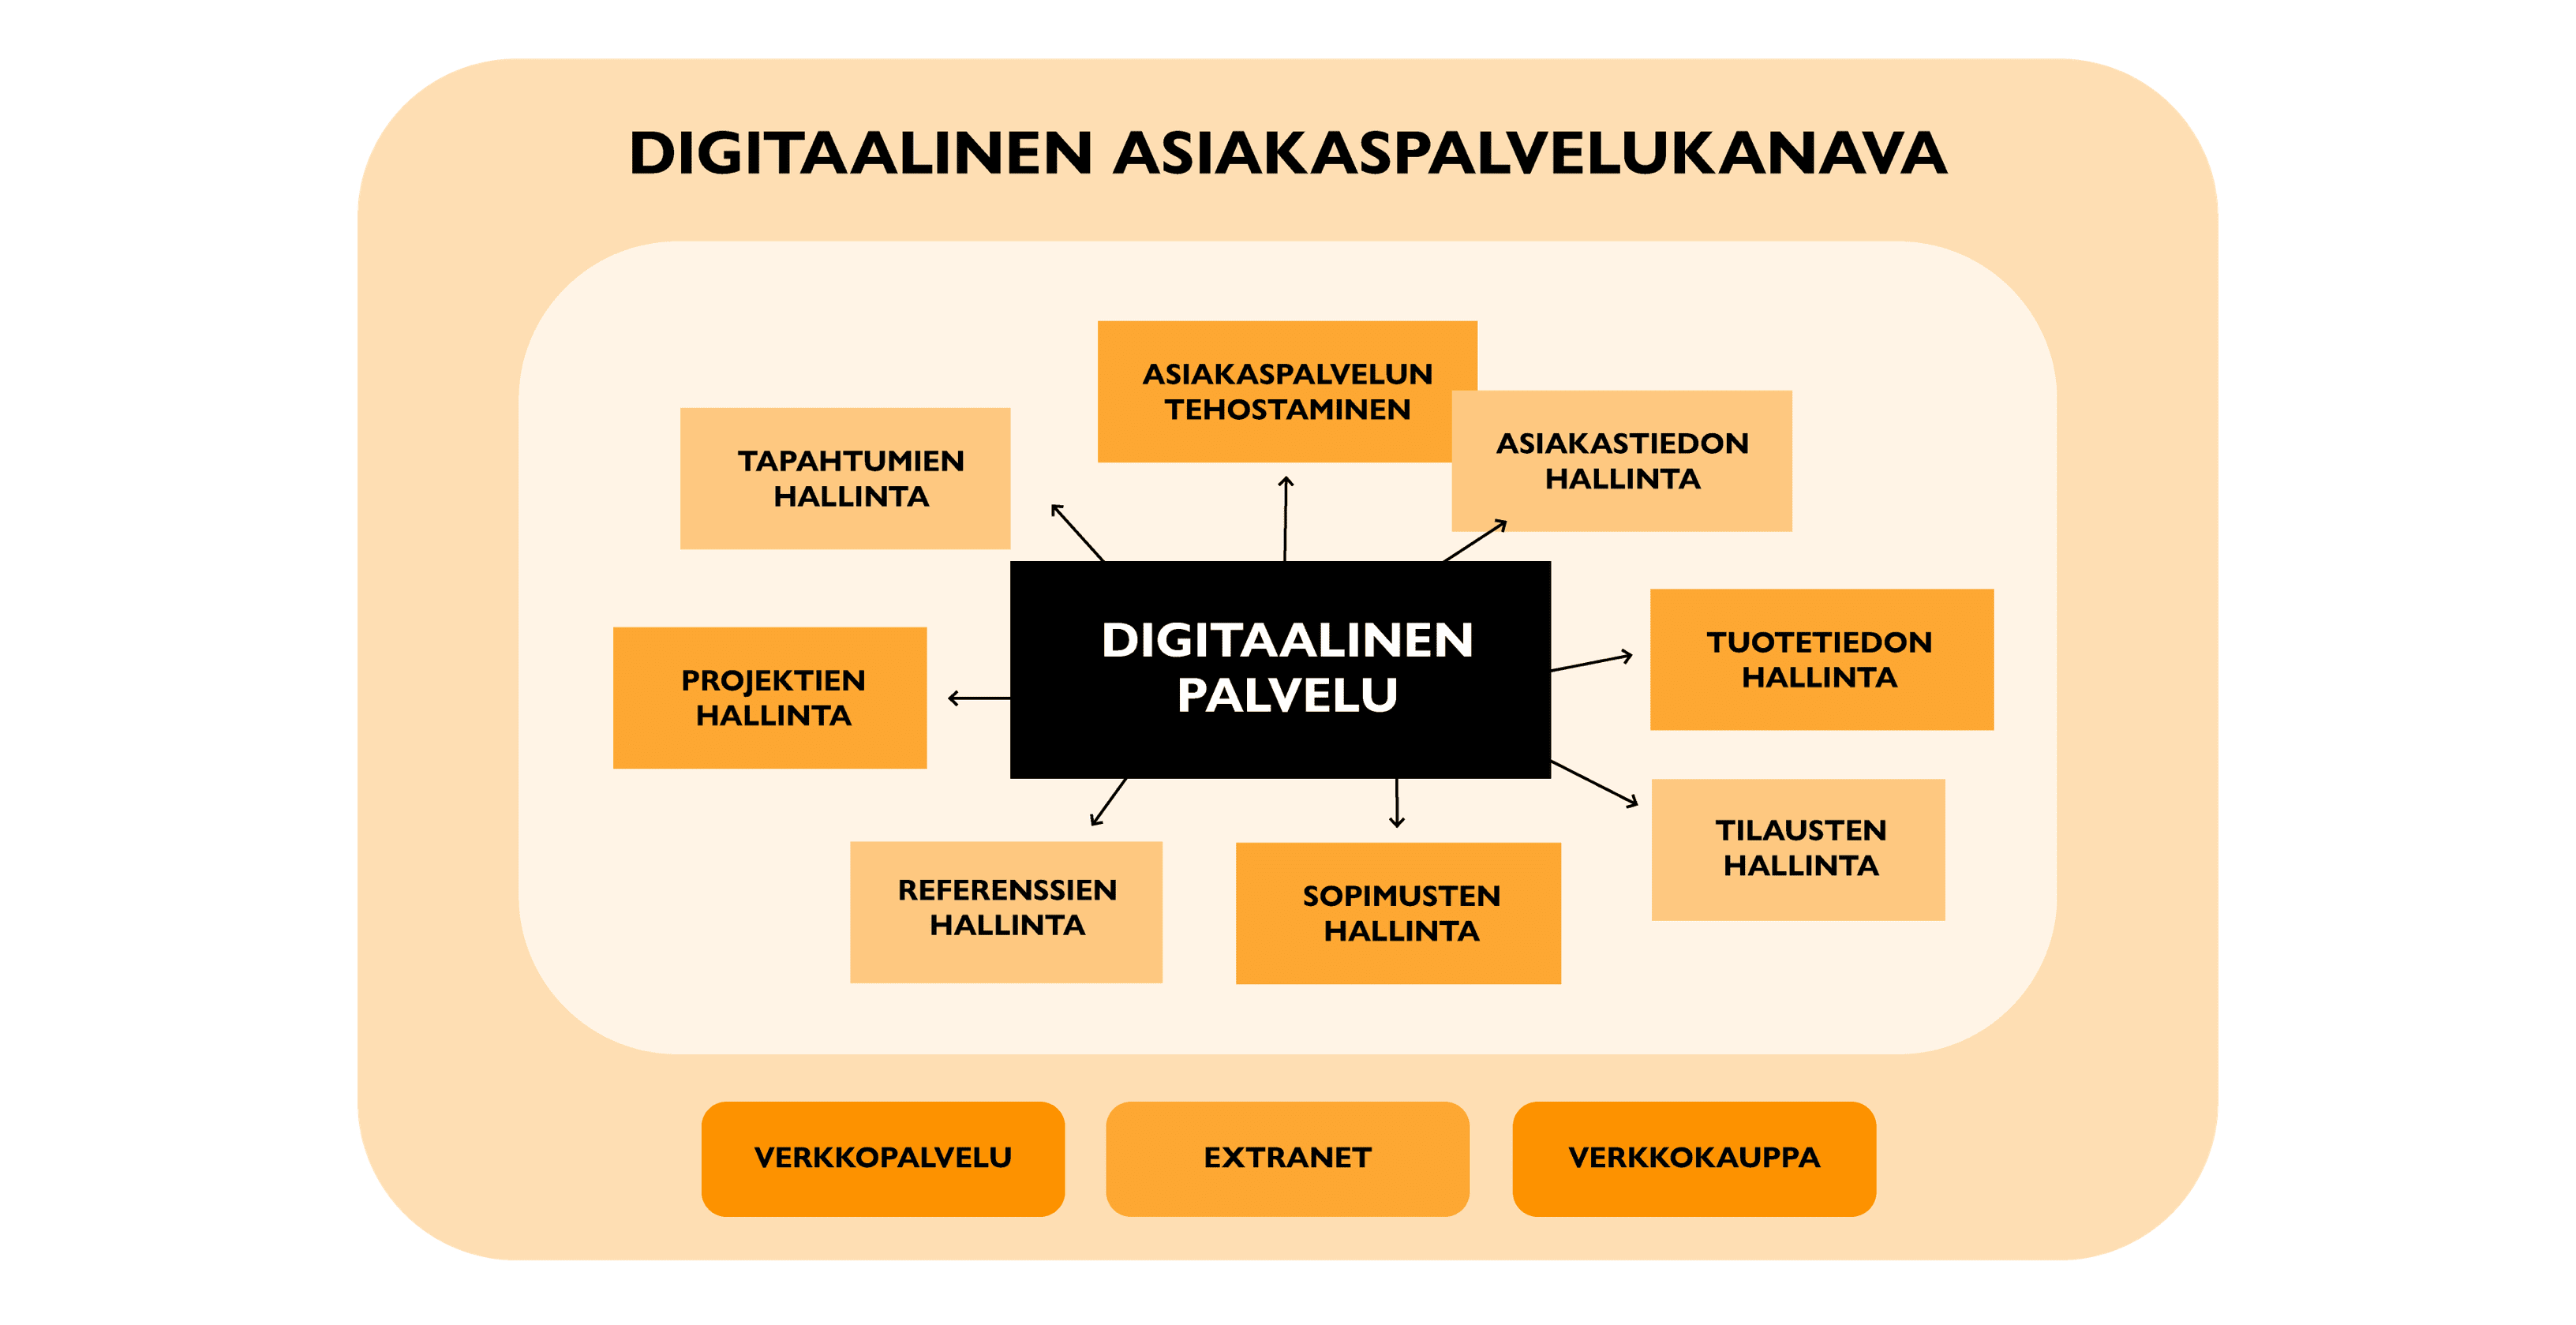 Kaaviossa listataan digitaalisia palveluita jotka muodostavat digitaalisen asiakaspalvelukanavan. 